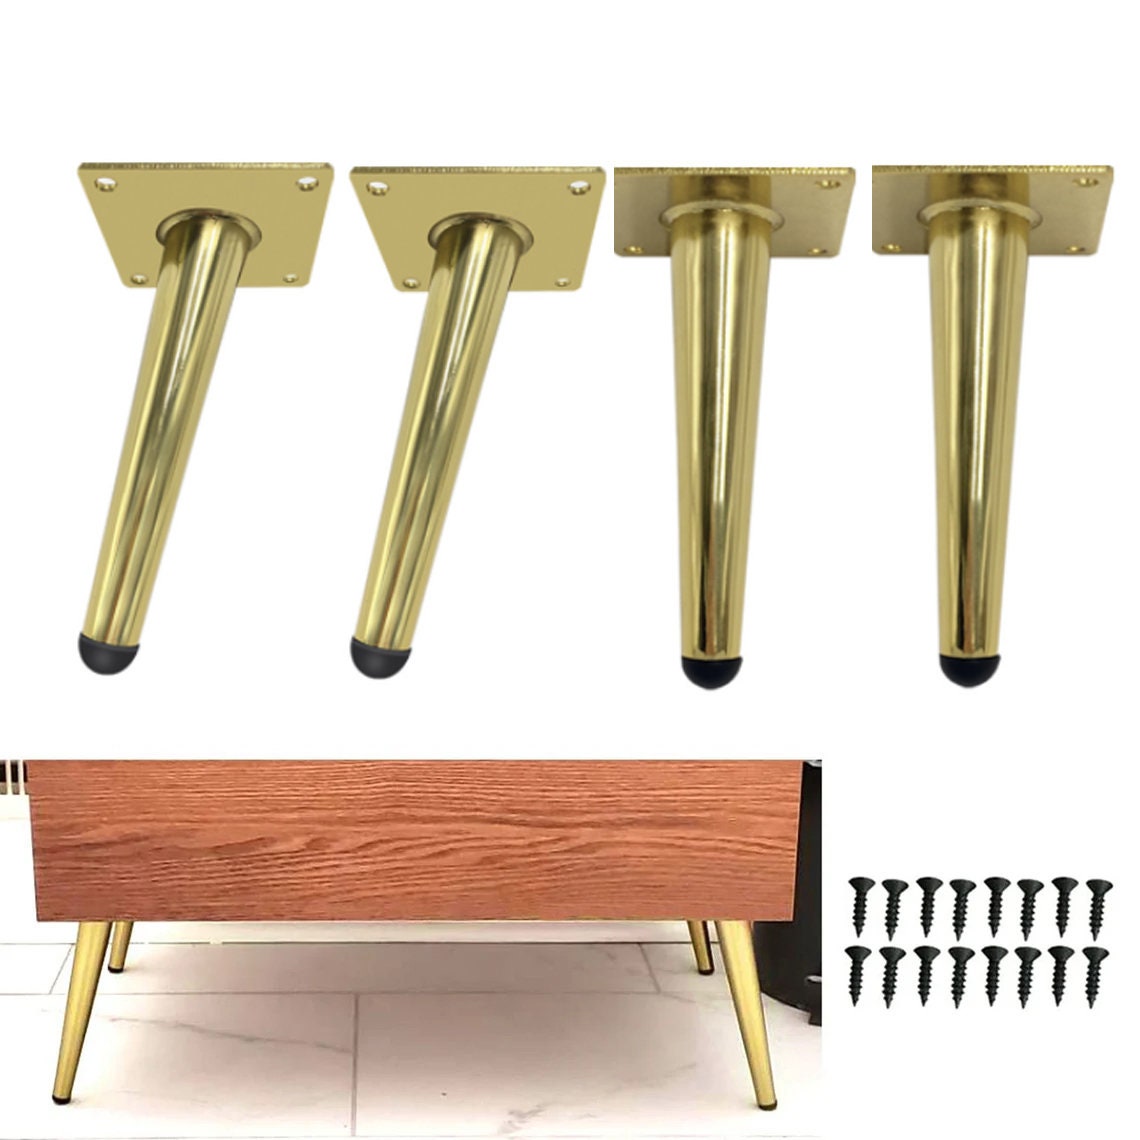 Pies niveladores de muebles de alta resistencia, niveladores ajustables  para patas de muebles para mesas, sillas, armarios, sofá, elevador, soporte  de